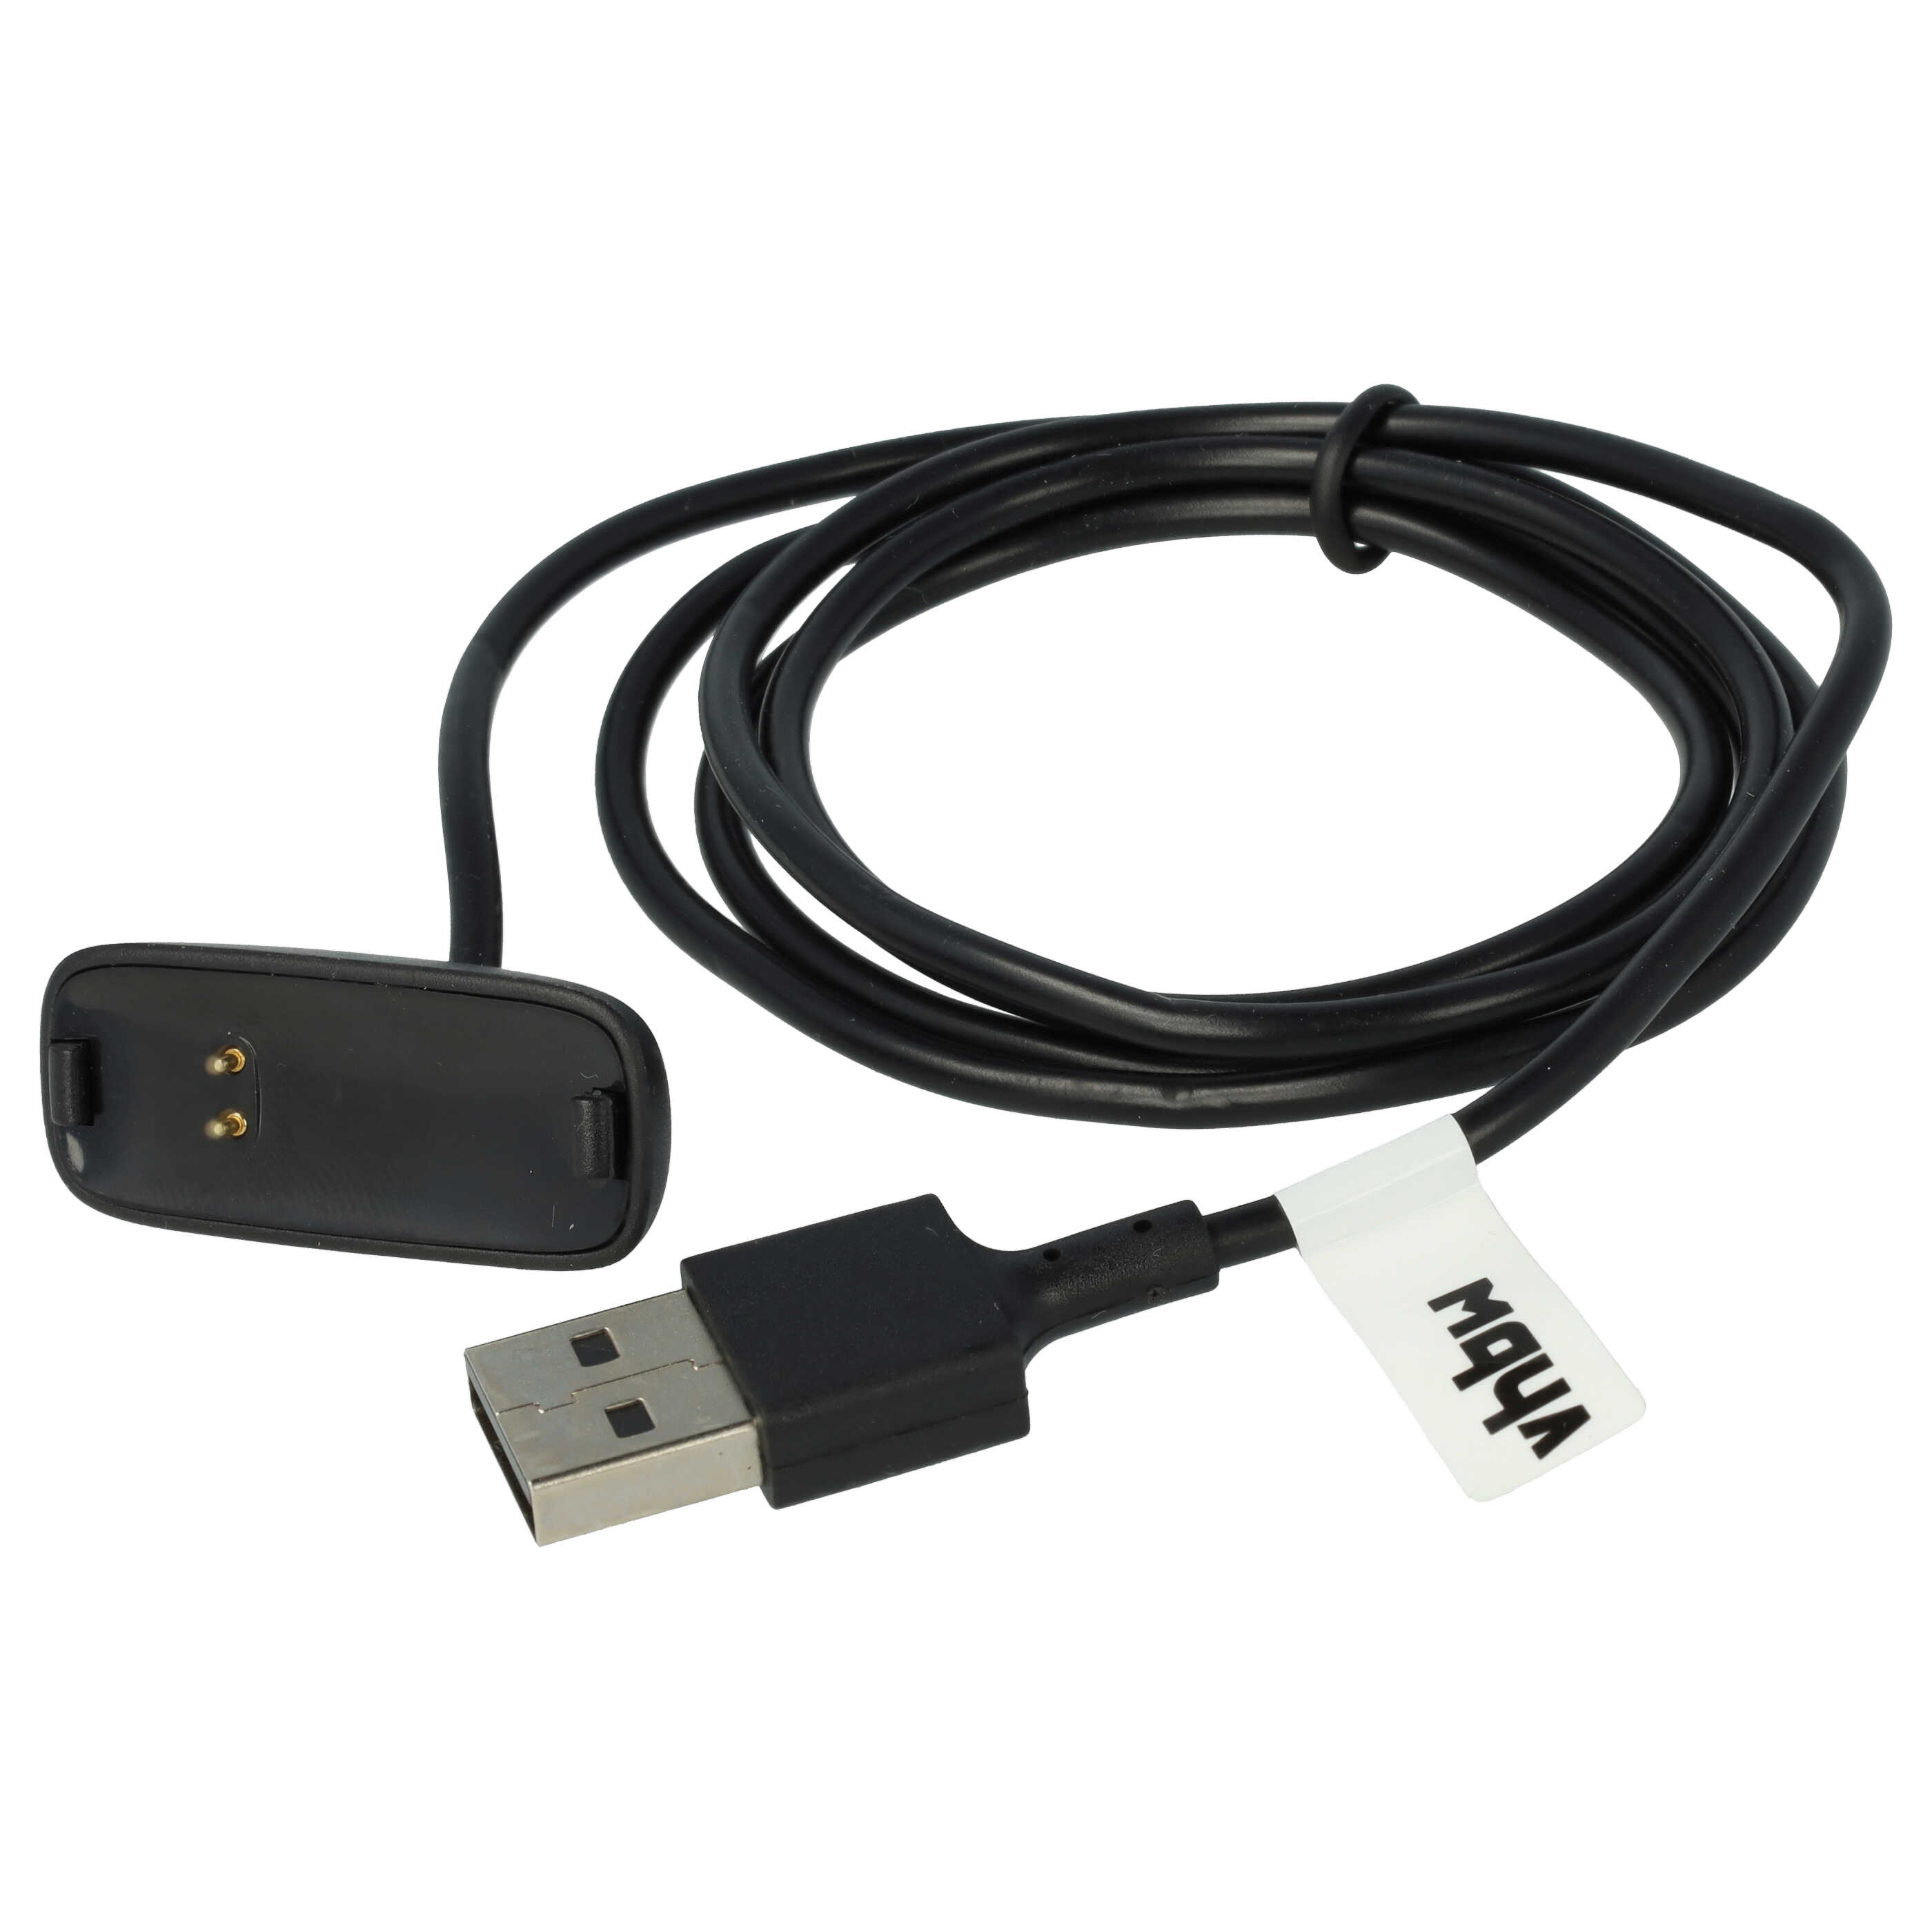 Cable de carga USB para smartwatch Fitbit Ace - negro 100 cm